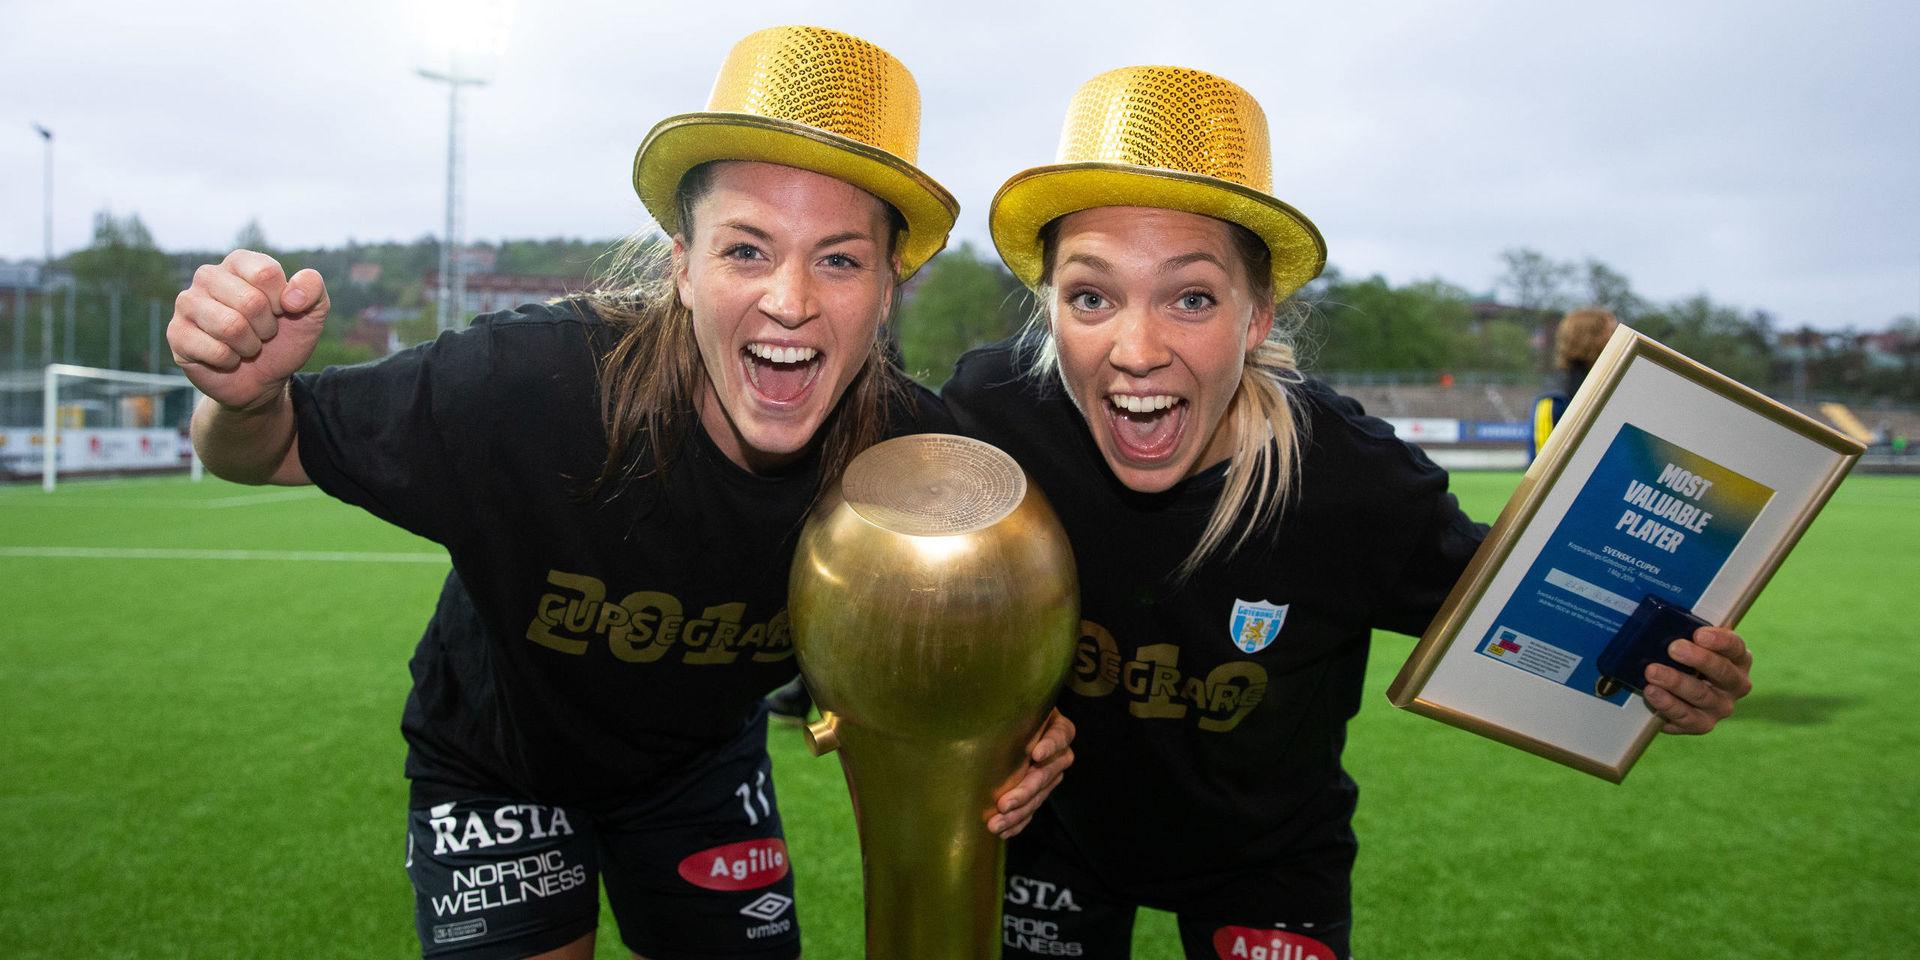 Pauline Hammarlund och Elin Rubensson jublar efter cupguldet 2019, frågan är hur möjligheterna för ett firande av SM-guldet ser ut med rådande pandemi?